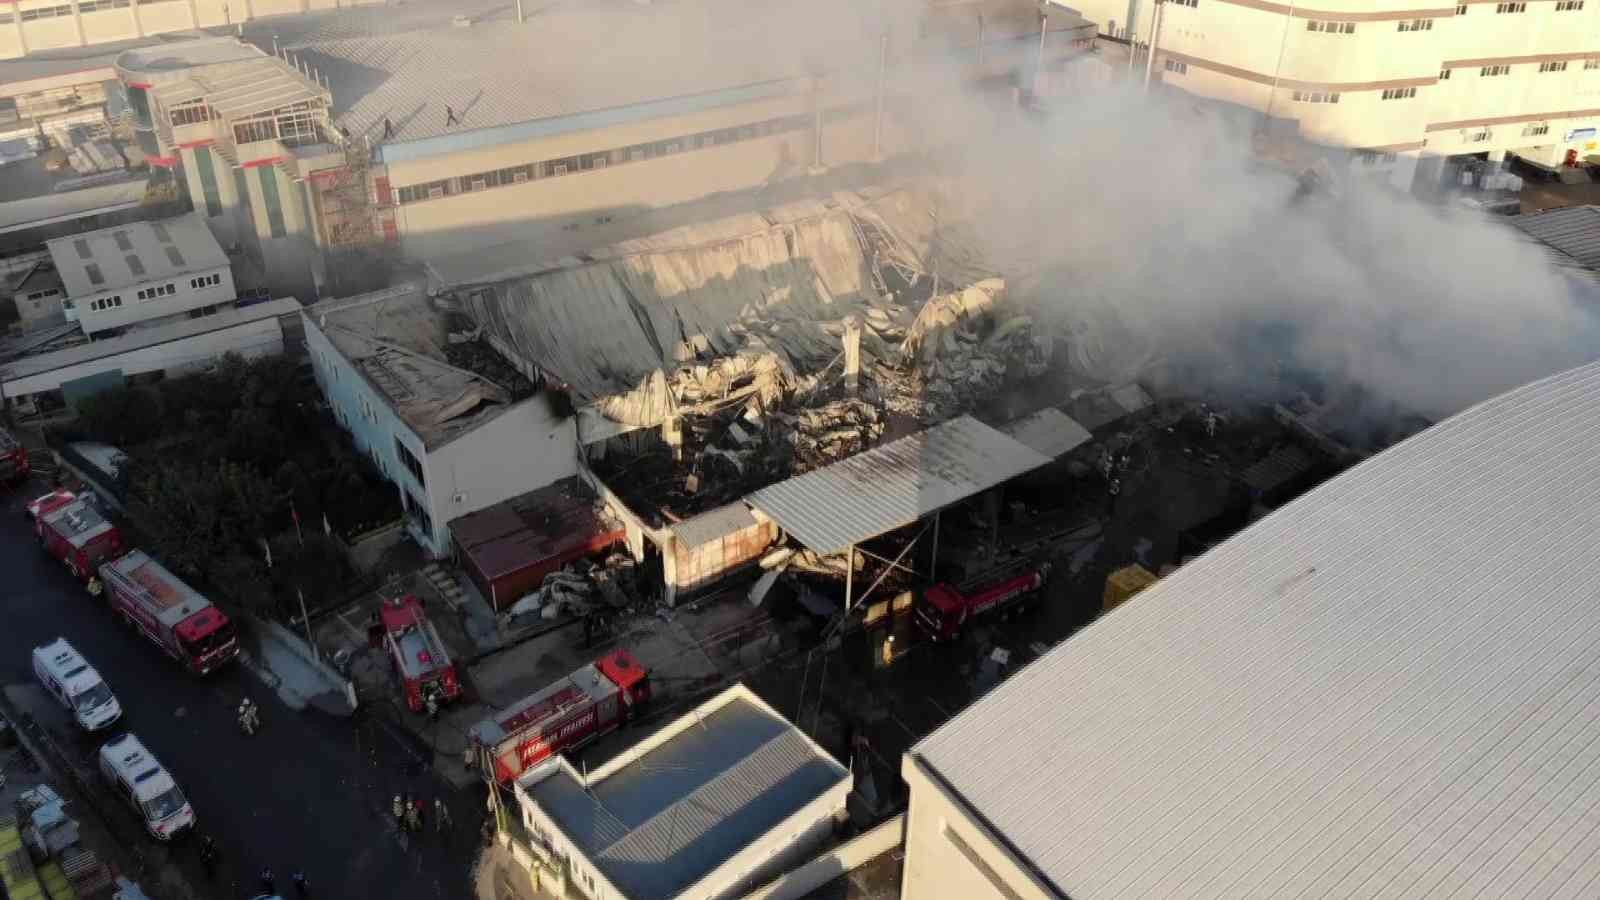 Esenyurt’ta 1 kişinin öldüğü fabrika yangınının boyutu gün ağarınca ortaya çıktı #istanbul